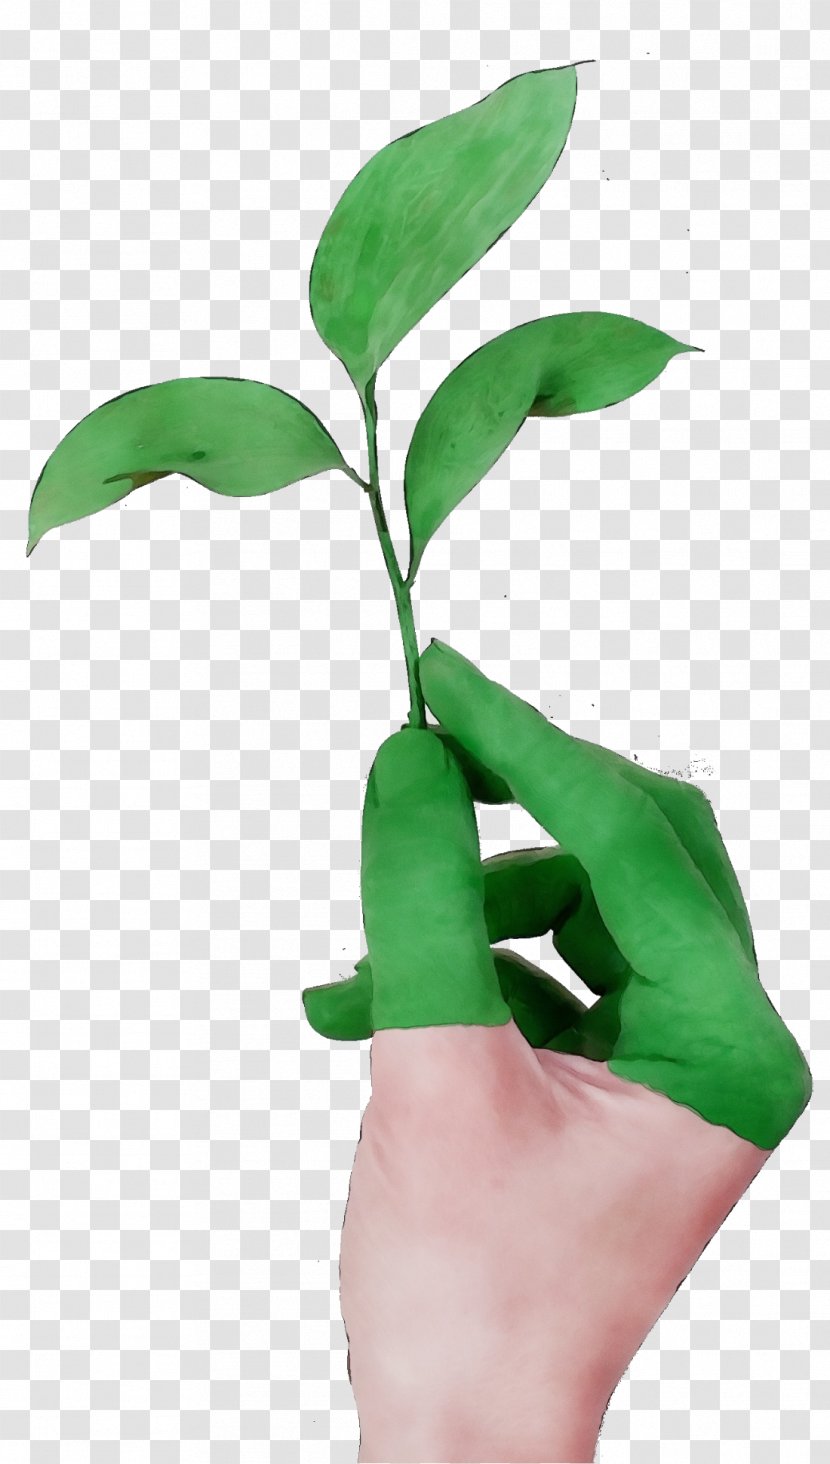 Leaf Green Plant Flower Hand - Finger - Houseplant Stem Transparent PNG